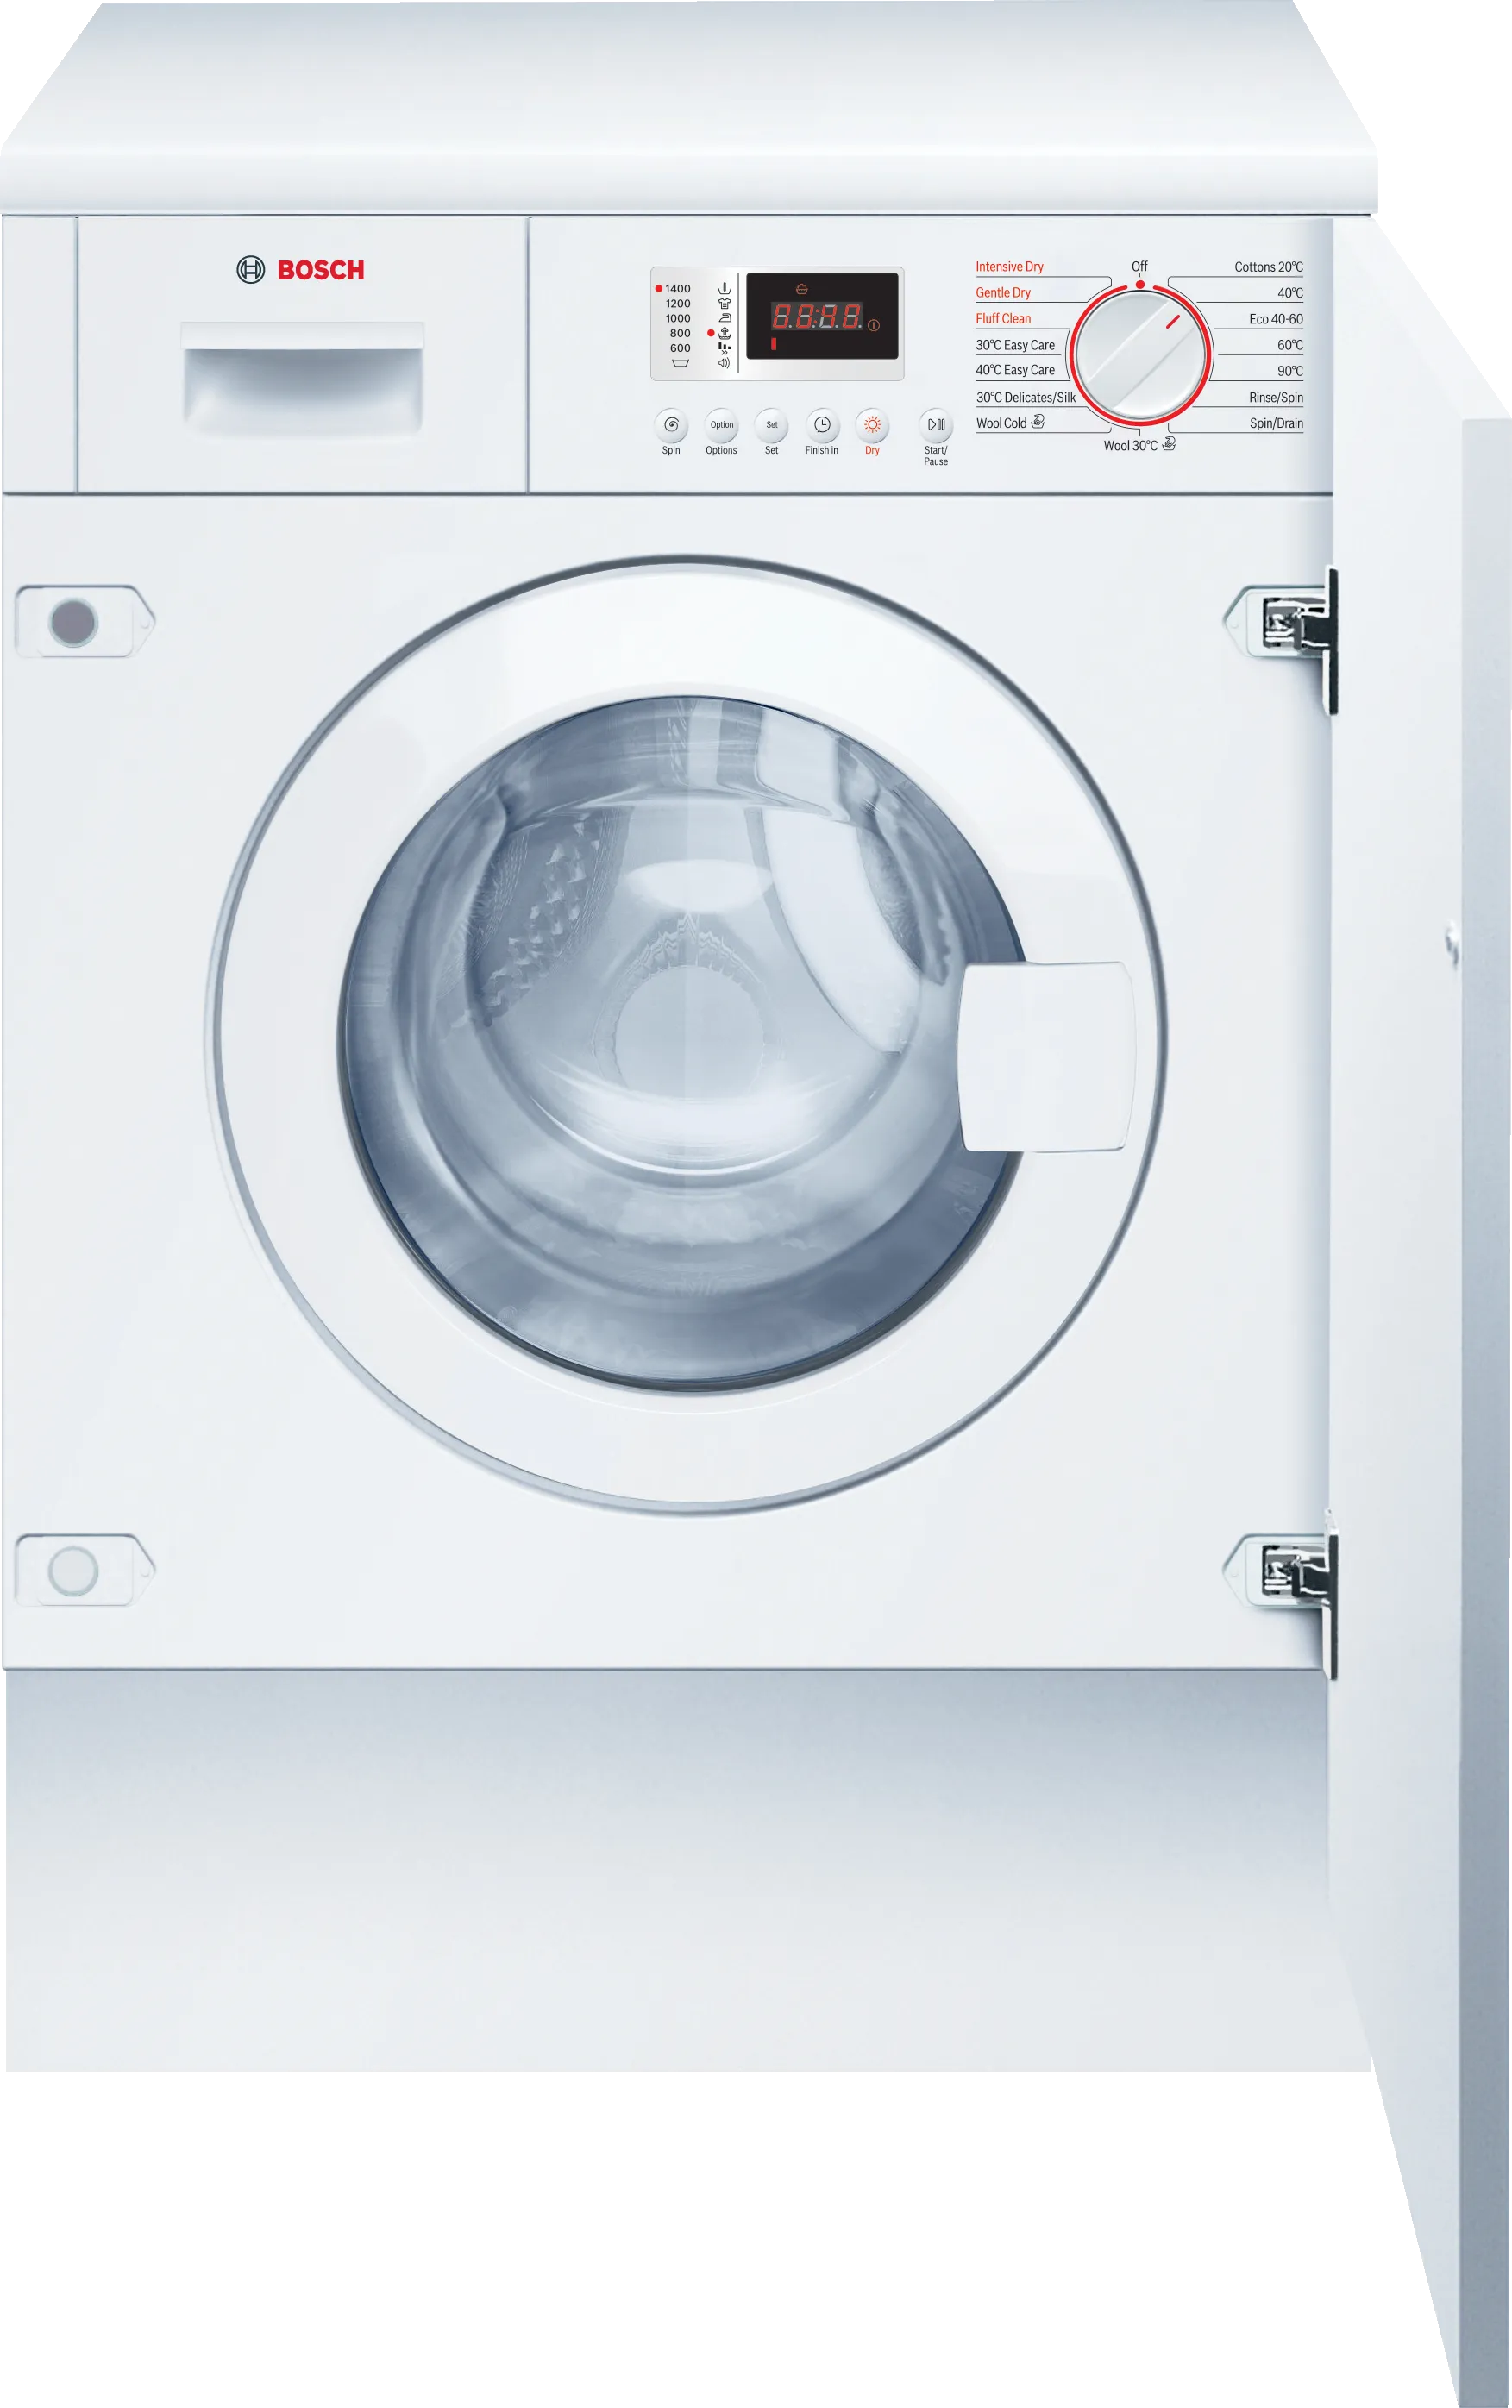 Series 4 Washer dryer 7/4 kg 